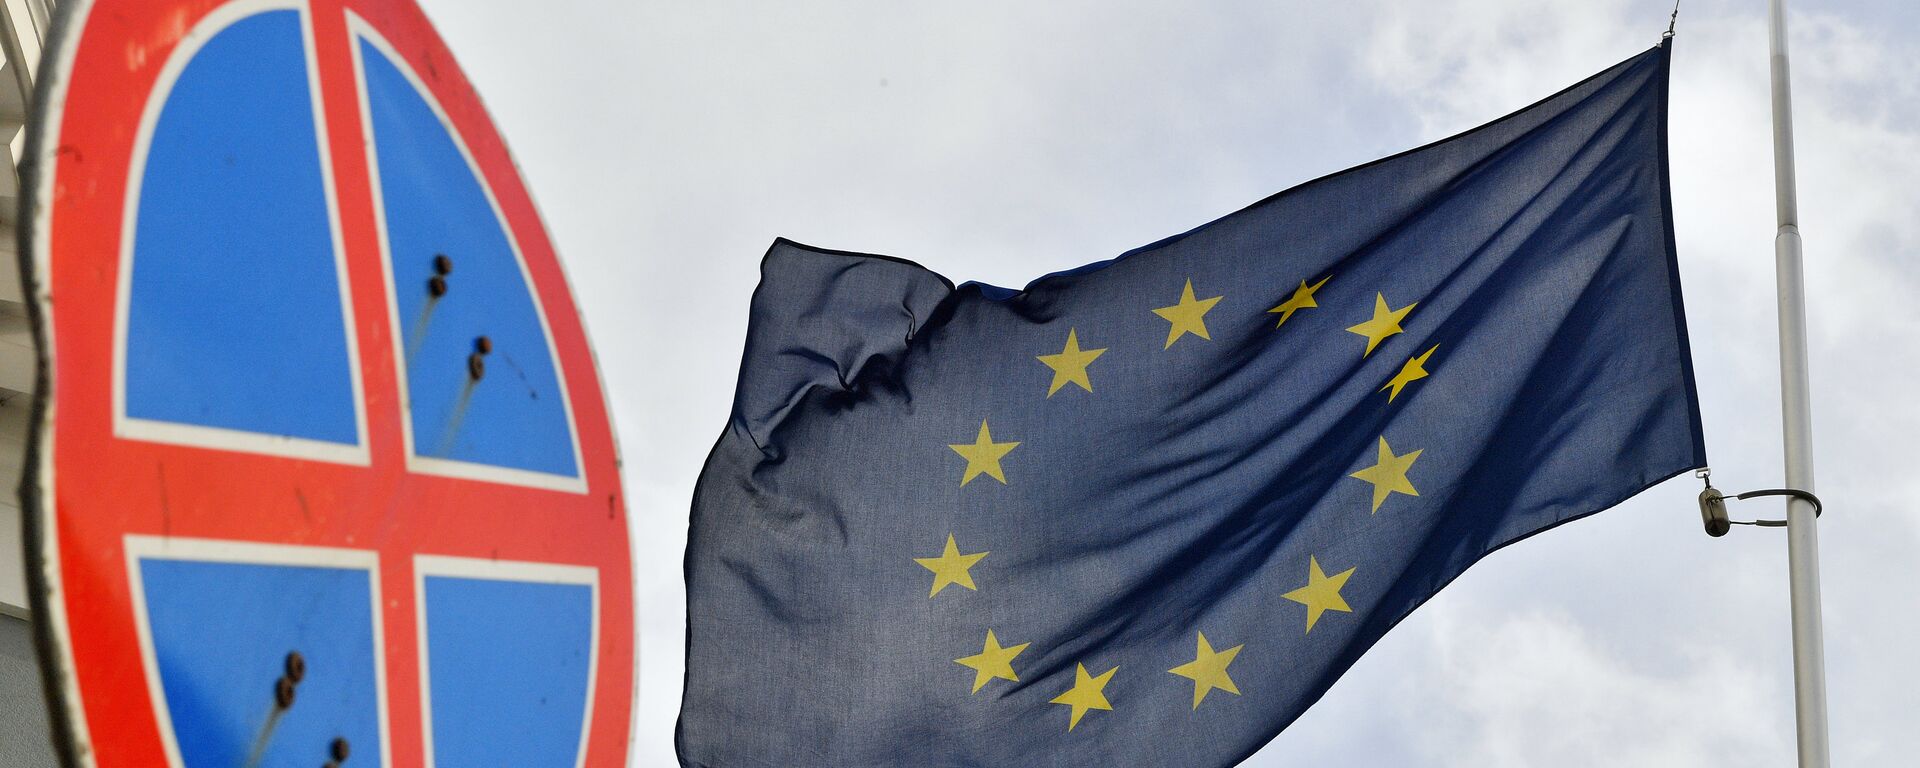 Флаг ЕС у здания представительства Европейского Союза в Москве. - Sputnik Latvija, 1920, 05.05.2021